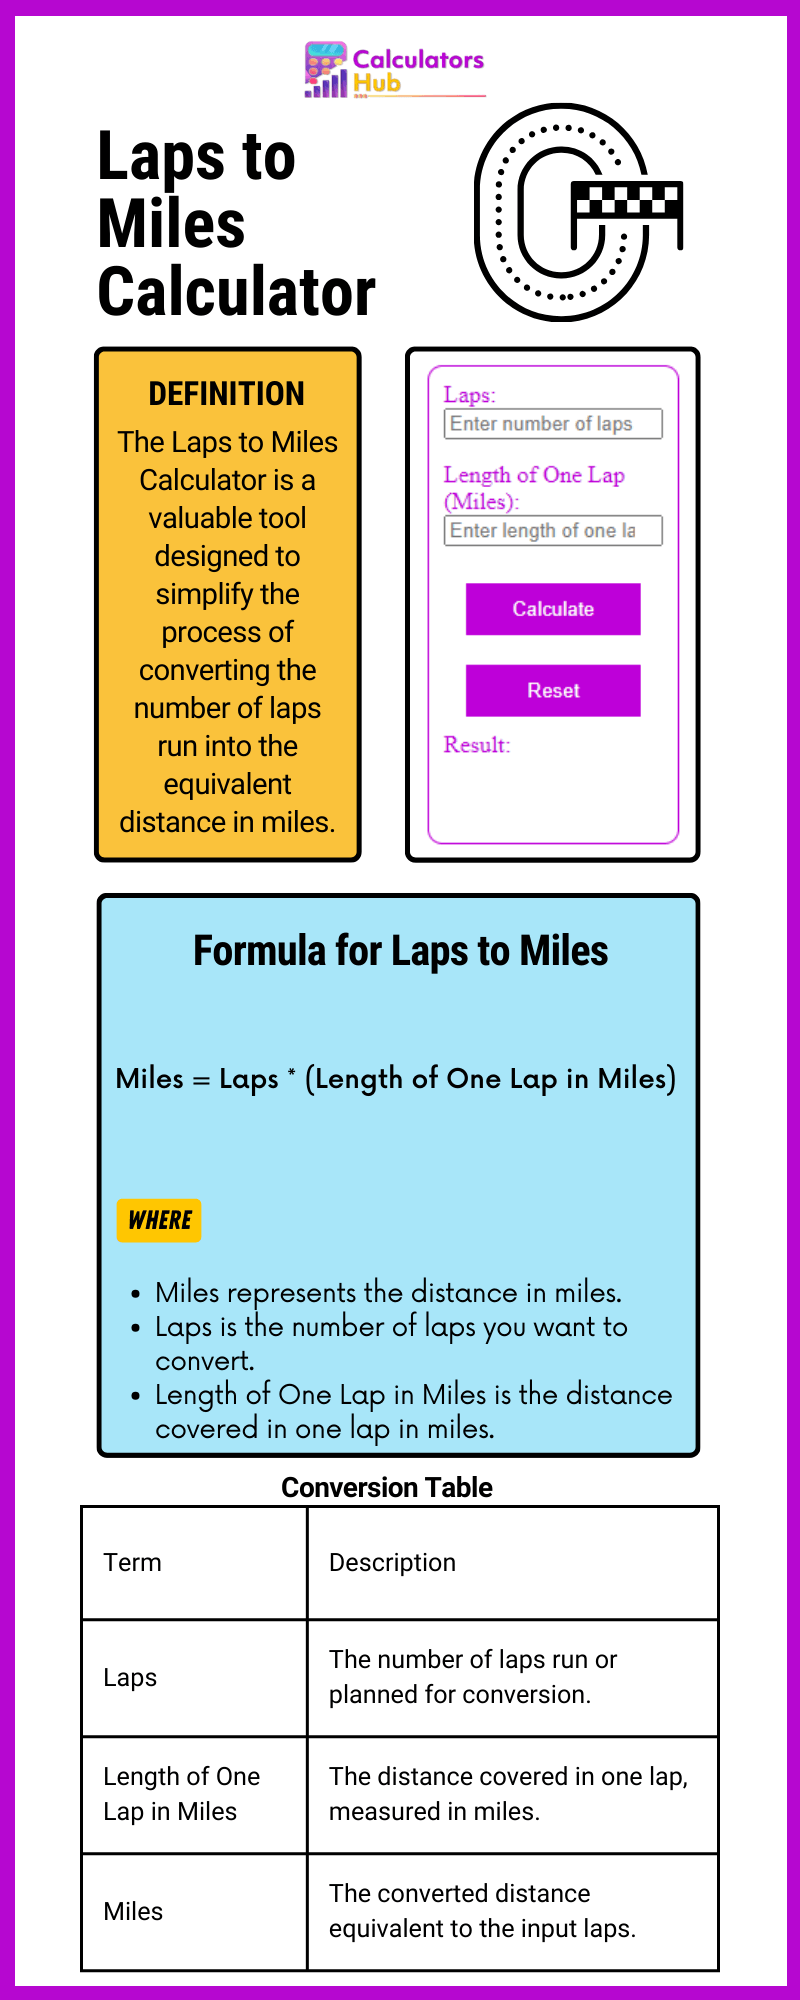 Laps to Miles Calculator